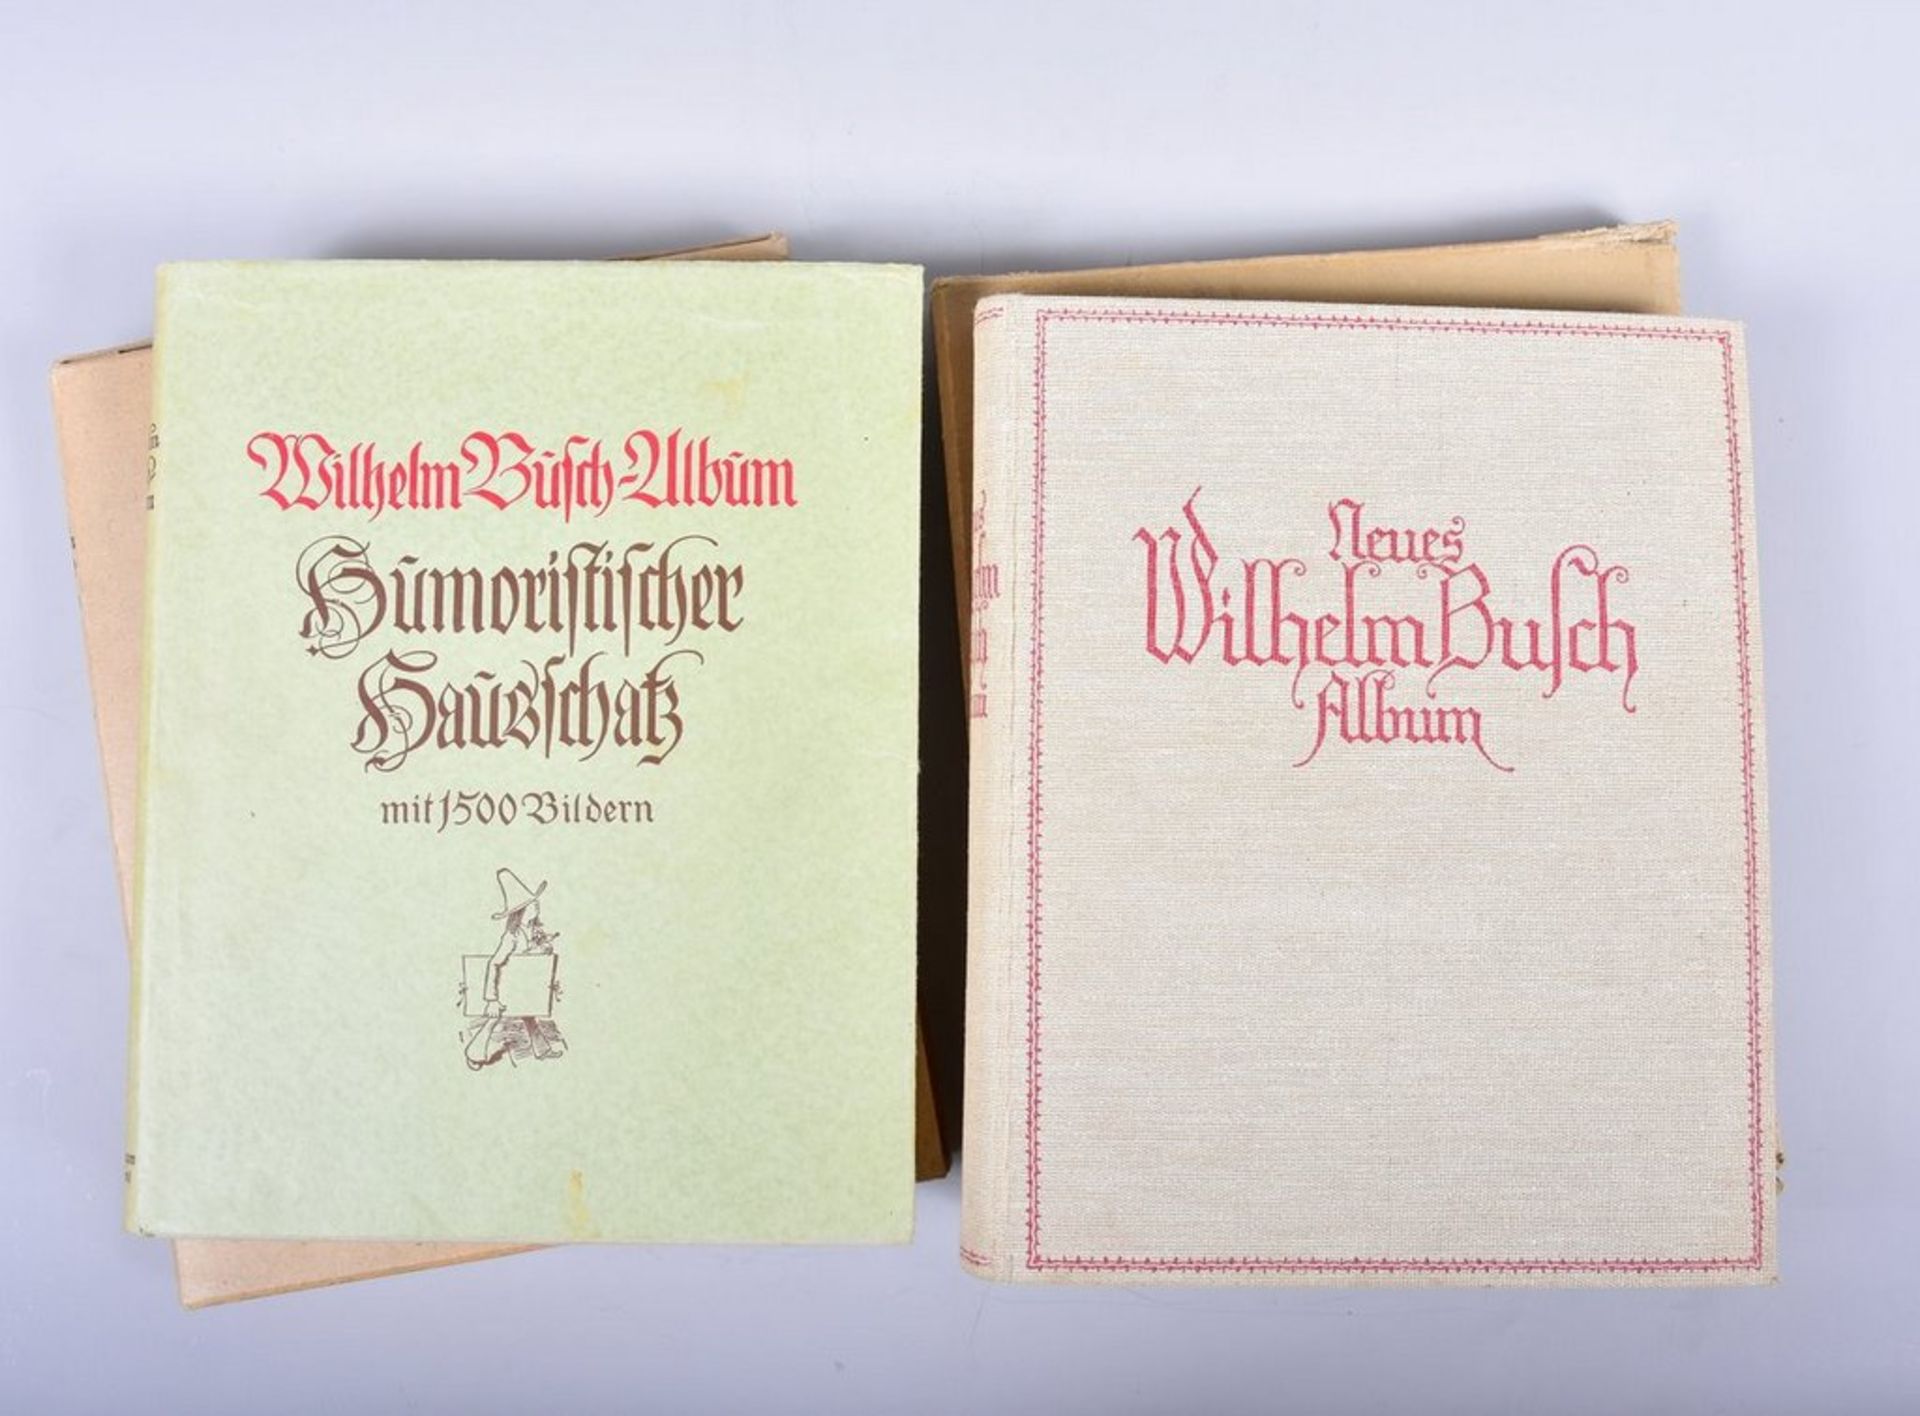 "Neues Wilhelm Busch Album", Verlagsanstalt H. Klemm, Berlin 1936, mit 1600 Bildern, "Wilhelm